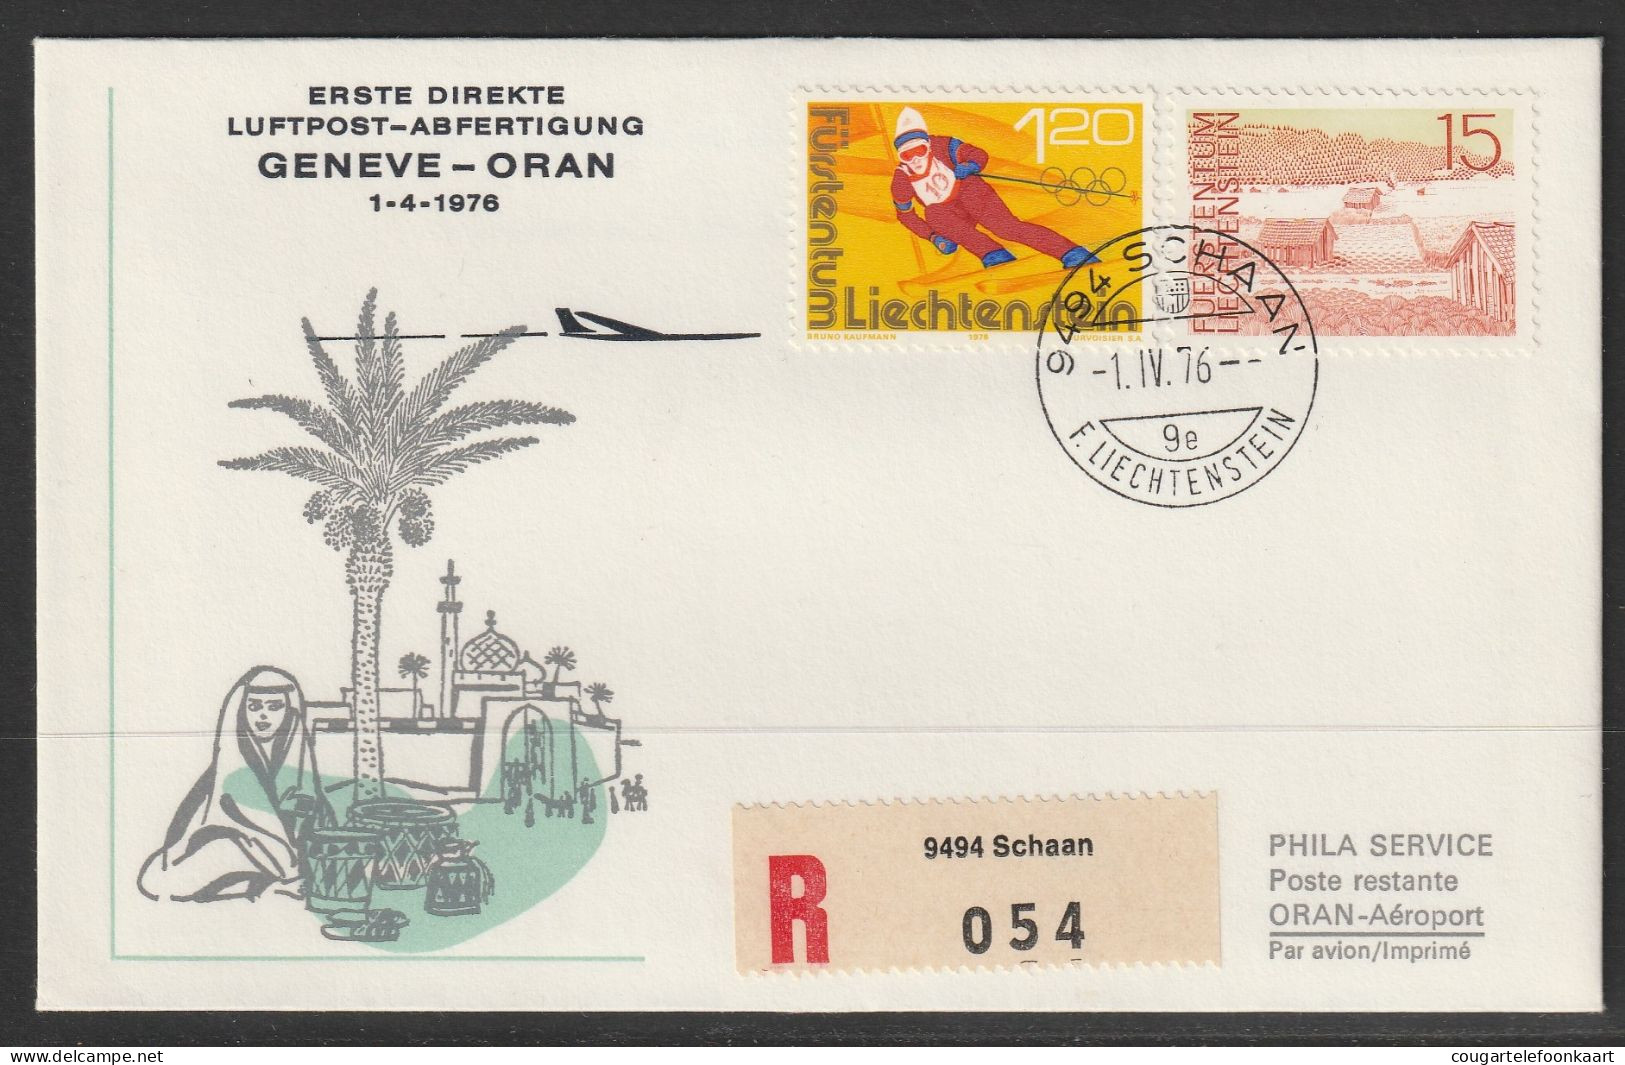 1976, Erste Direkte Luftpost-Abfertigung, Liechtenstein - Oran Alger Algiers - Luftpost